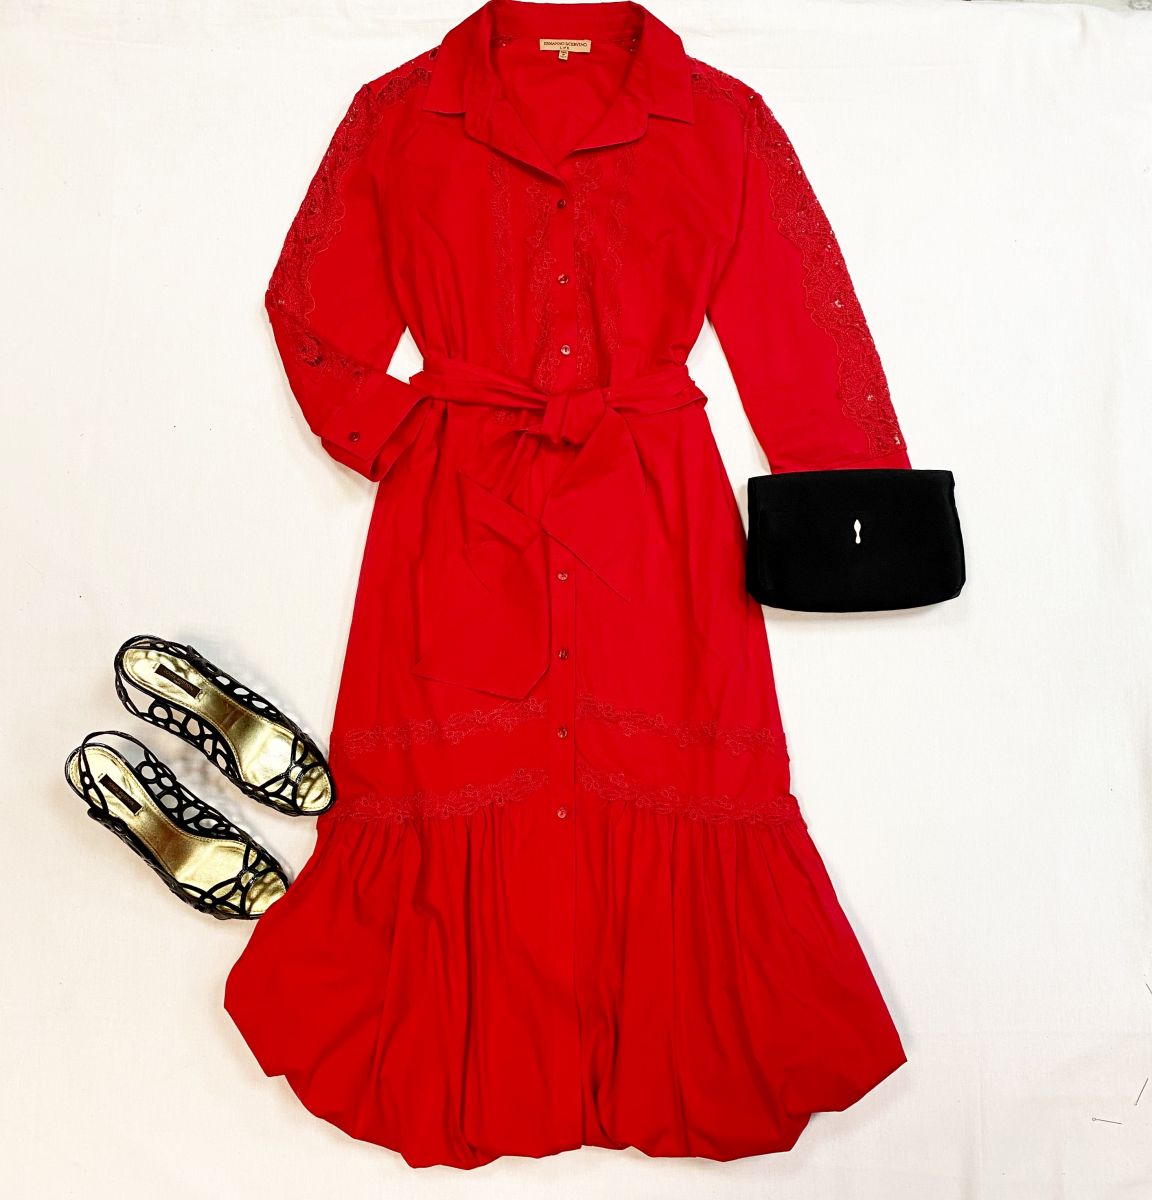 Платье/вышивка / Ermanno Scervino размер 44 цена 30 770 руб
Босоножки Louis Vuitton размер 39.5 цена 15 385 руб
Клатч Louboutin 